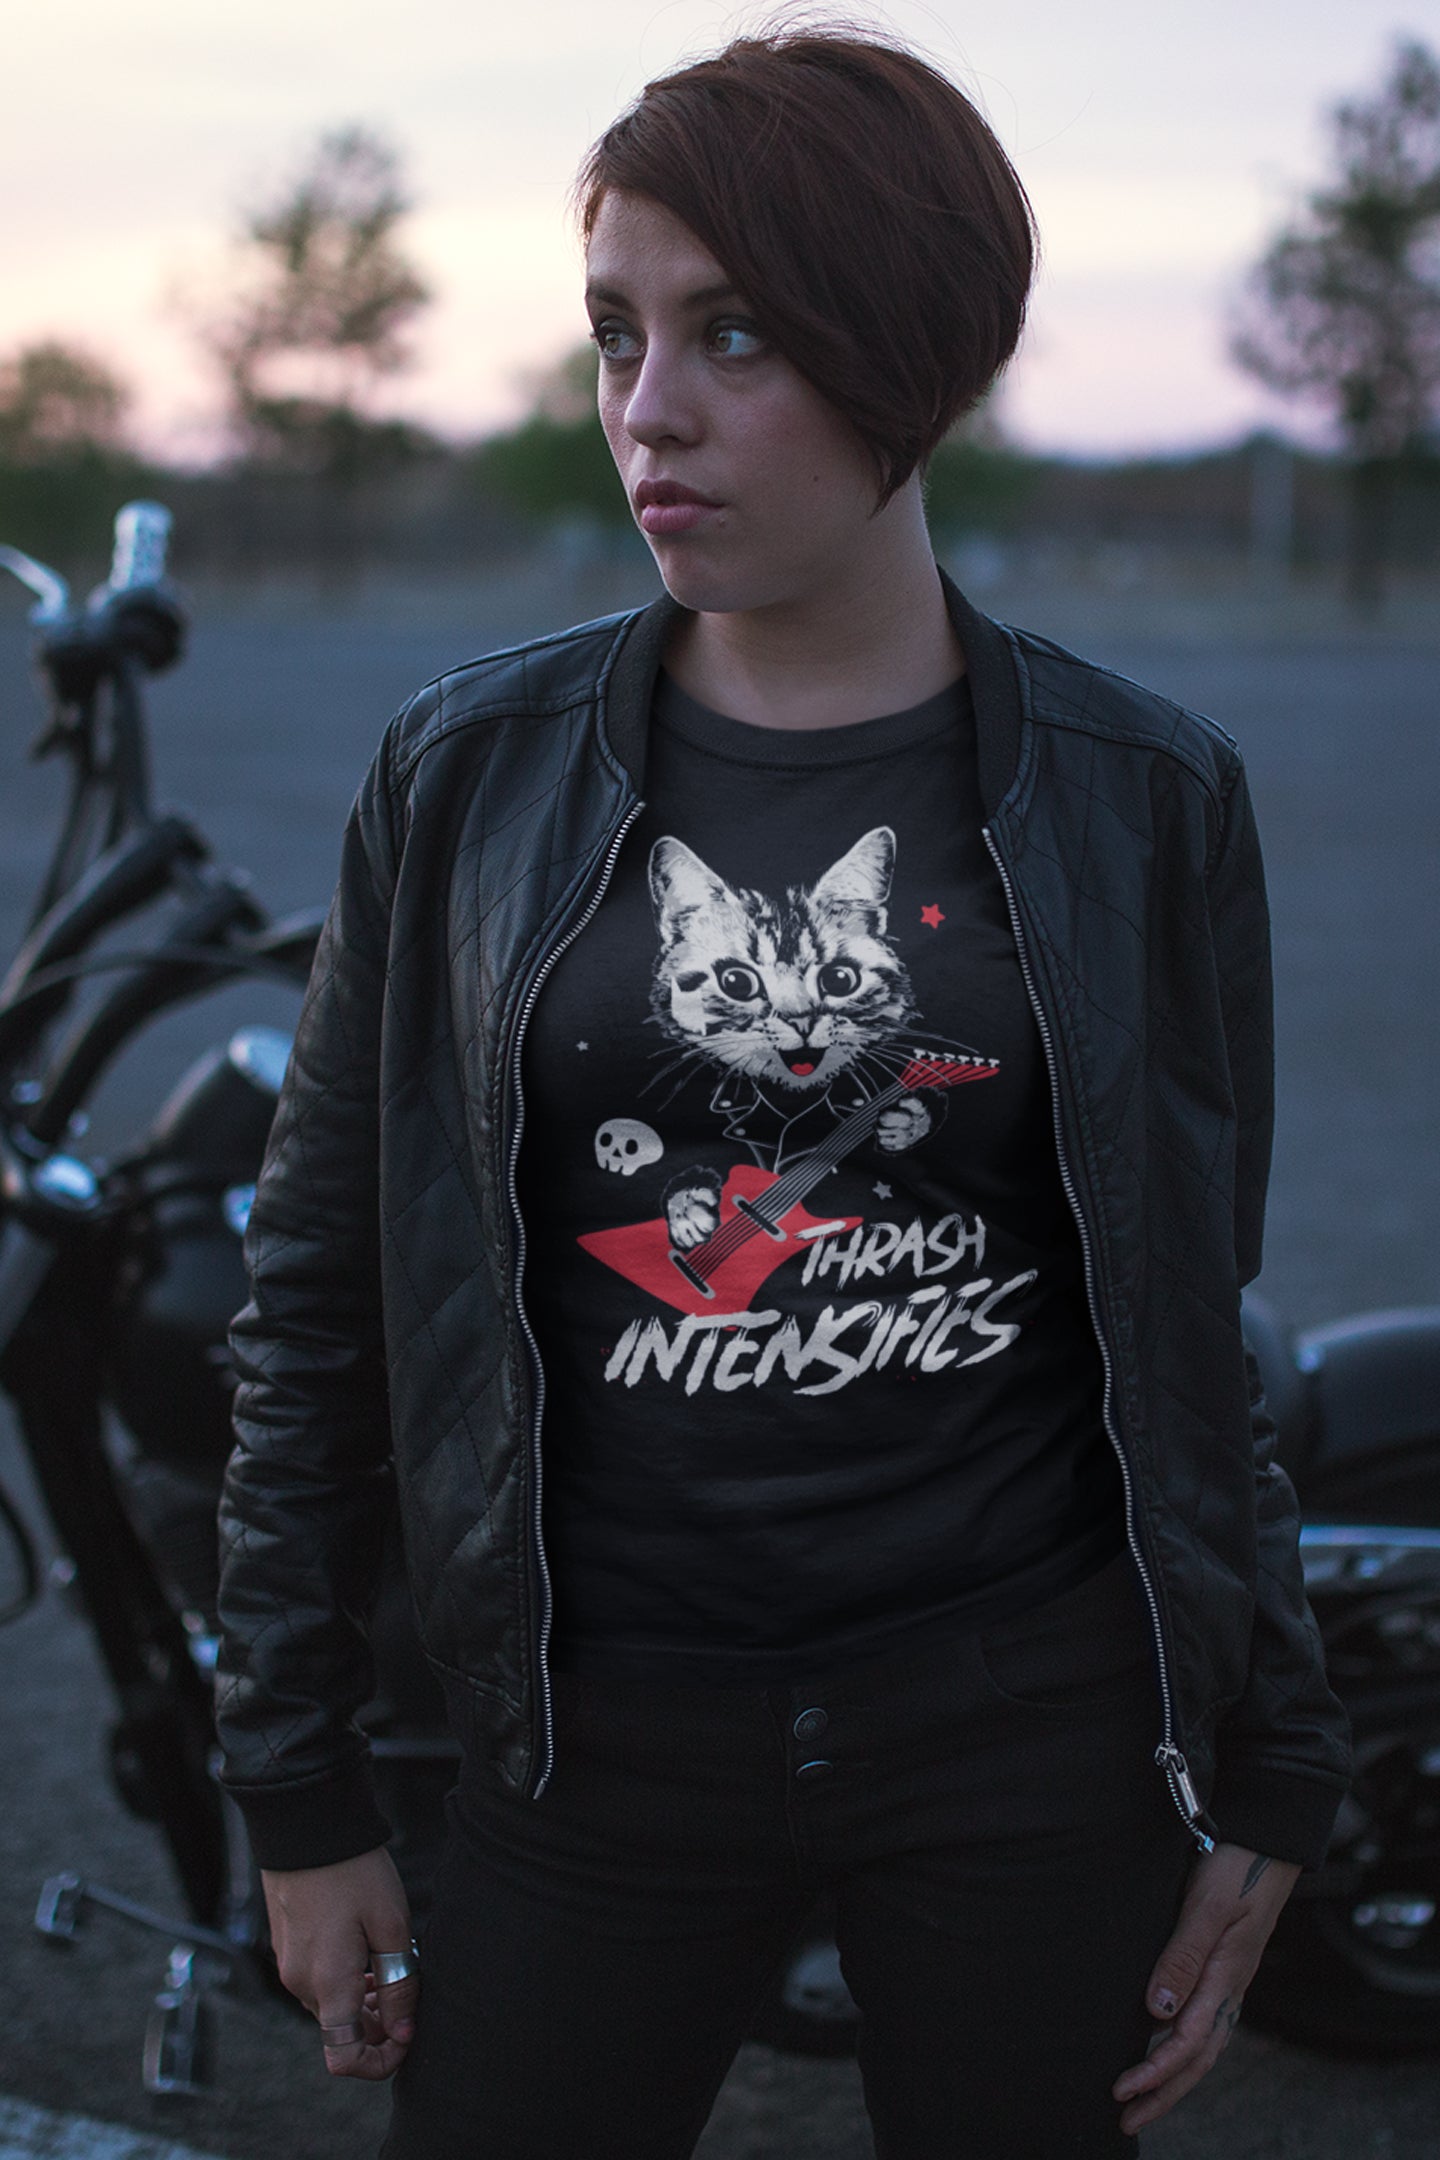 Thrash Intensifies : Women's 100% Cotton T-Shirt - A gentler design from our “pet cats” metal t-shirt line